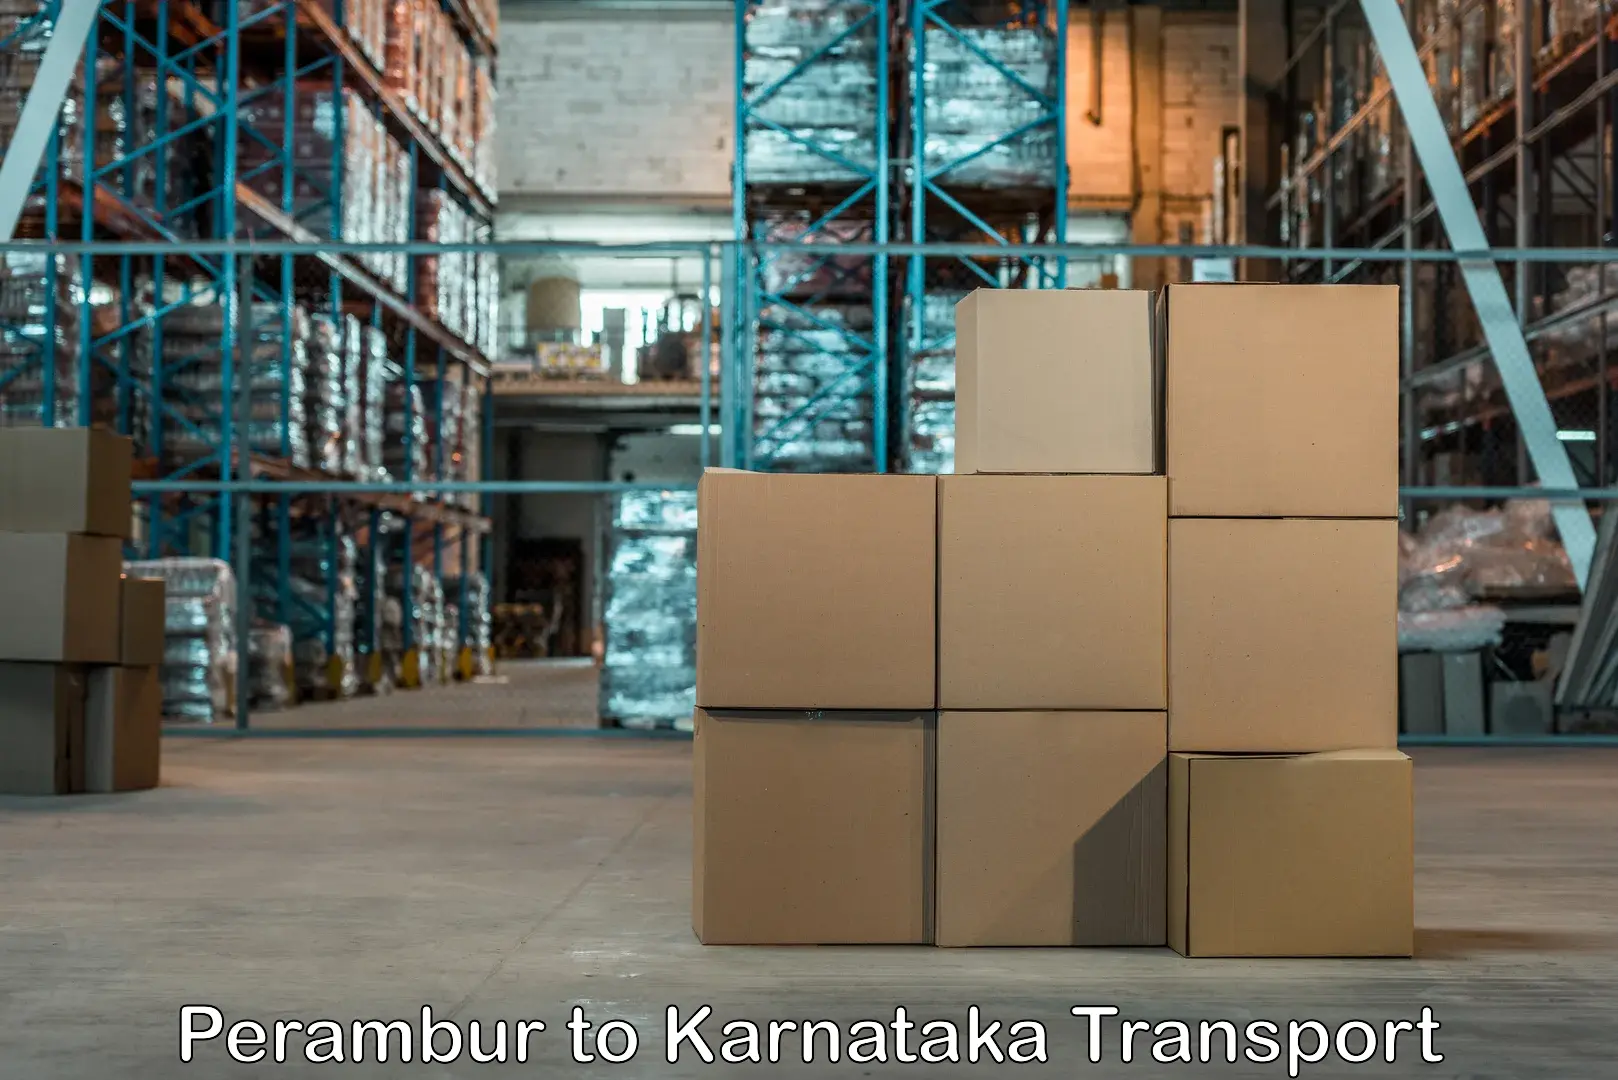 Container transport service Perambur to Tavarekere